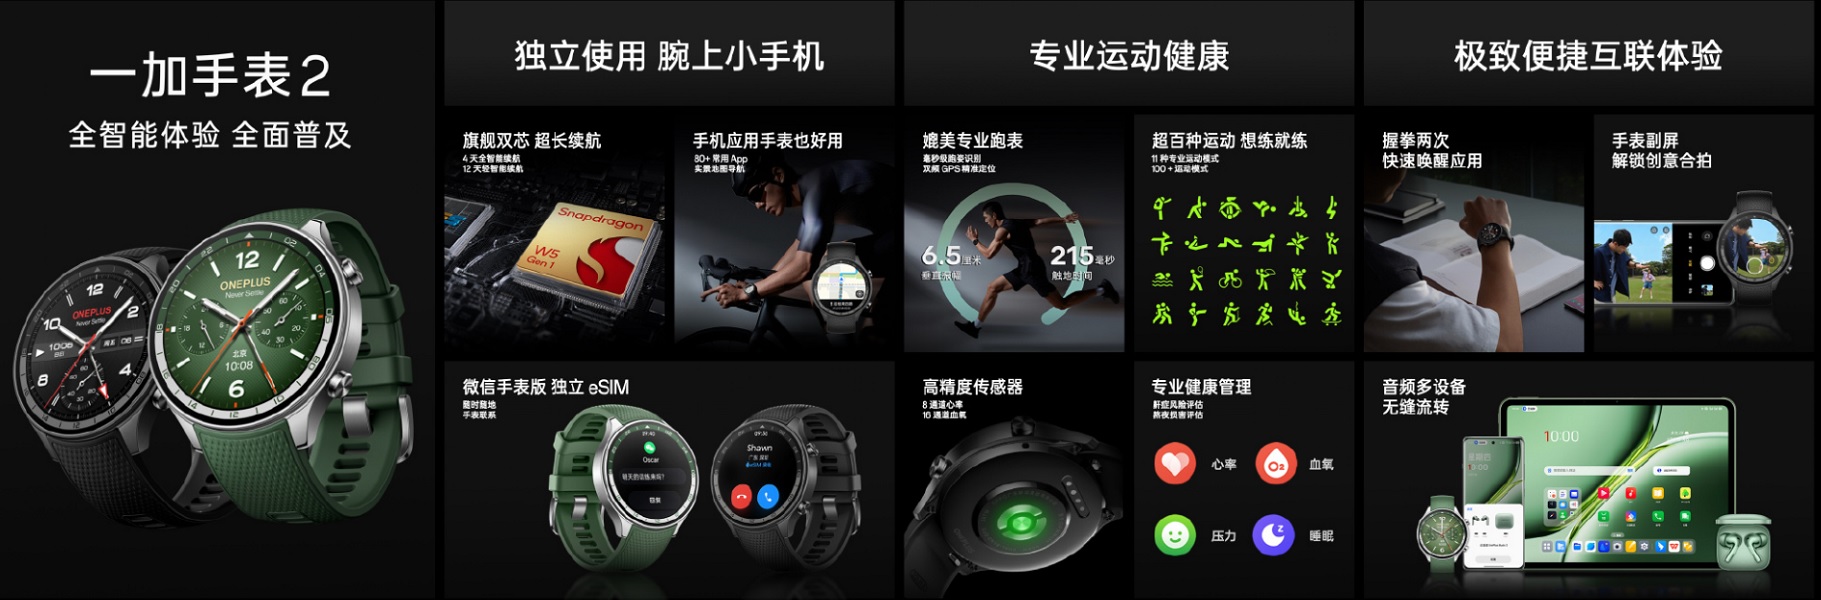 中国的 OnePlus Watch 2 带来了改进的地图导航、精确的传感器、Android 和 iOS 支持。